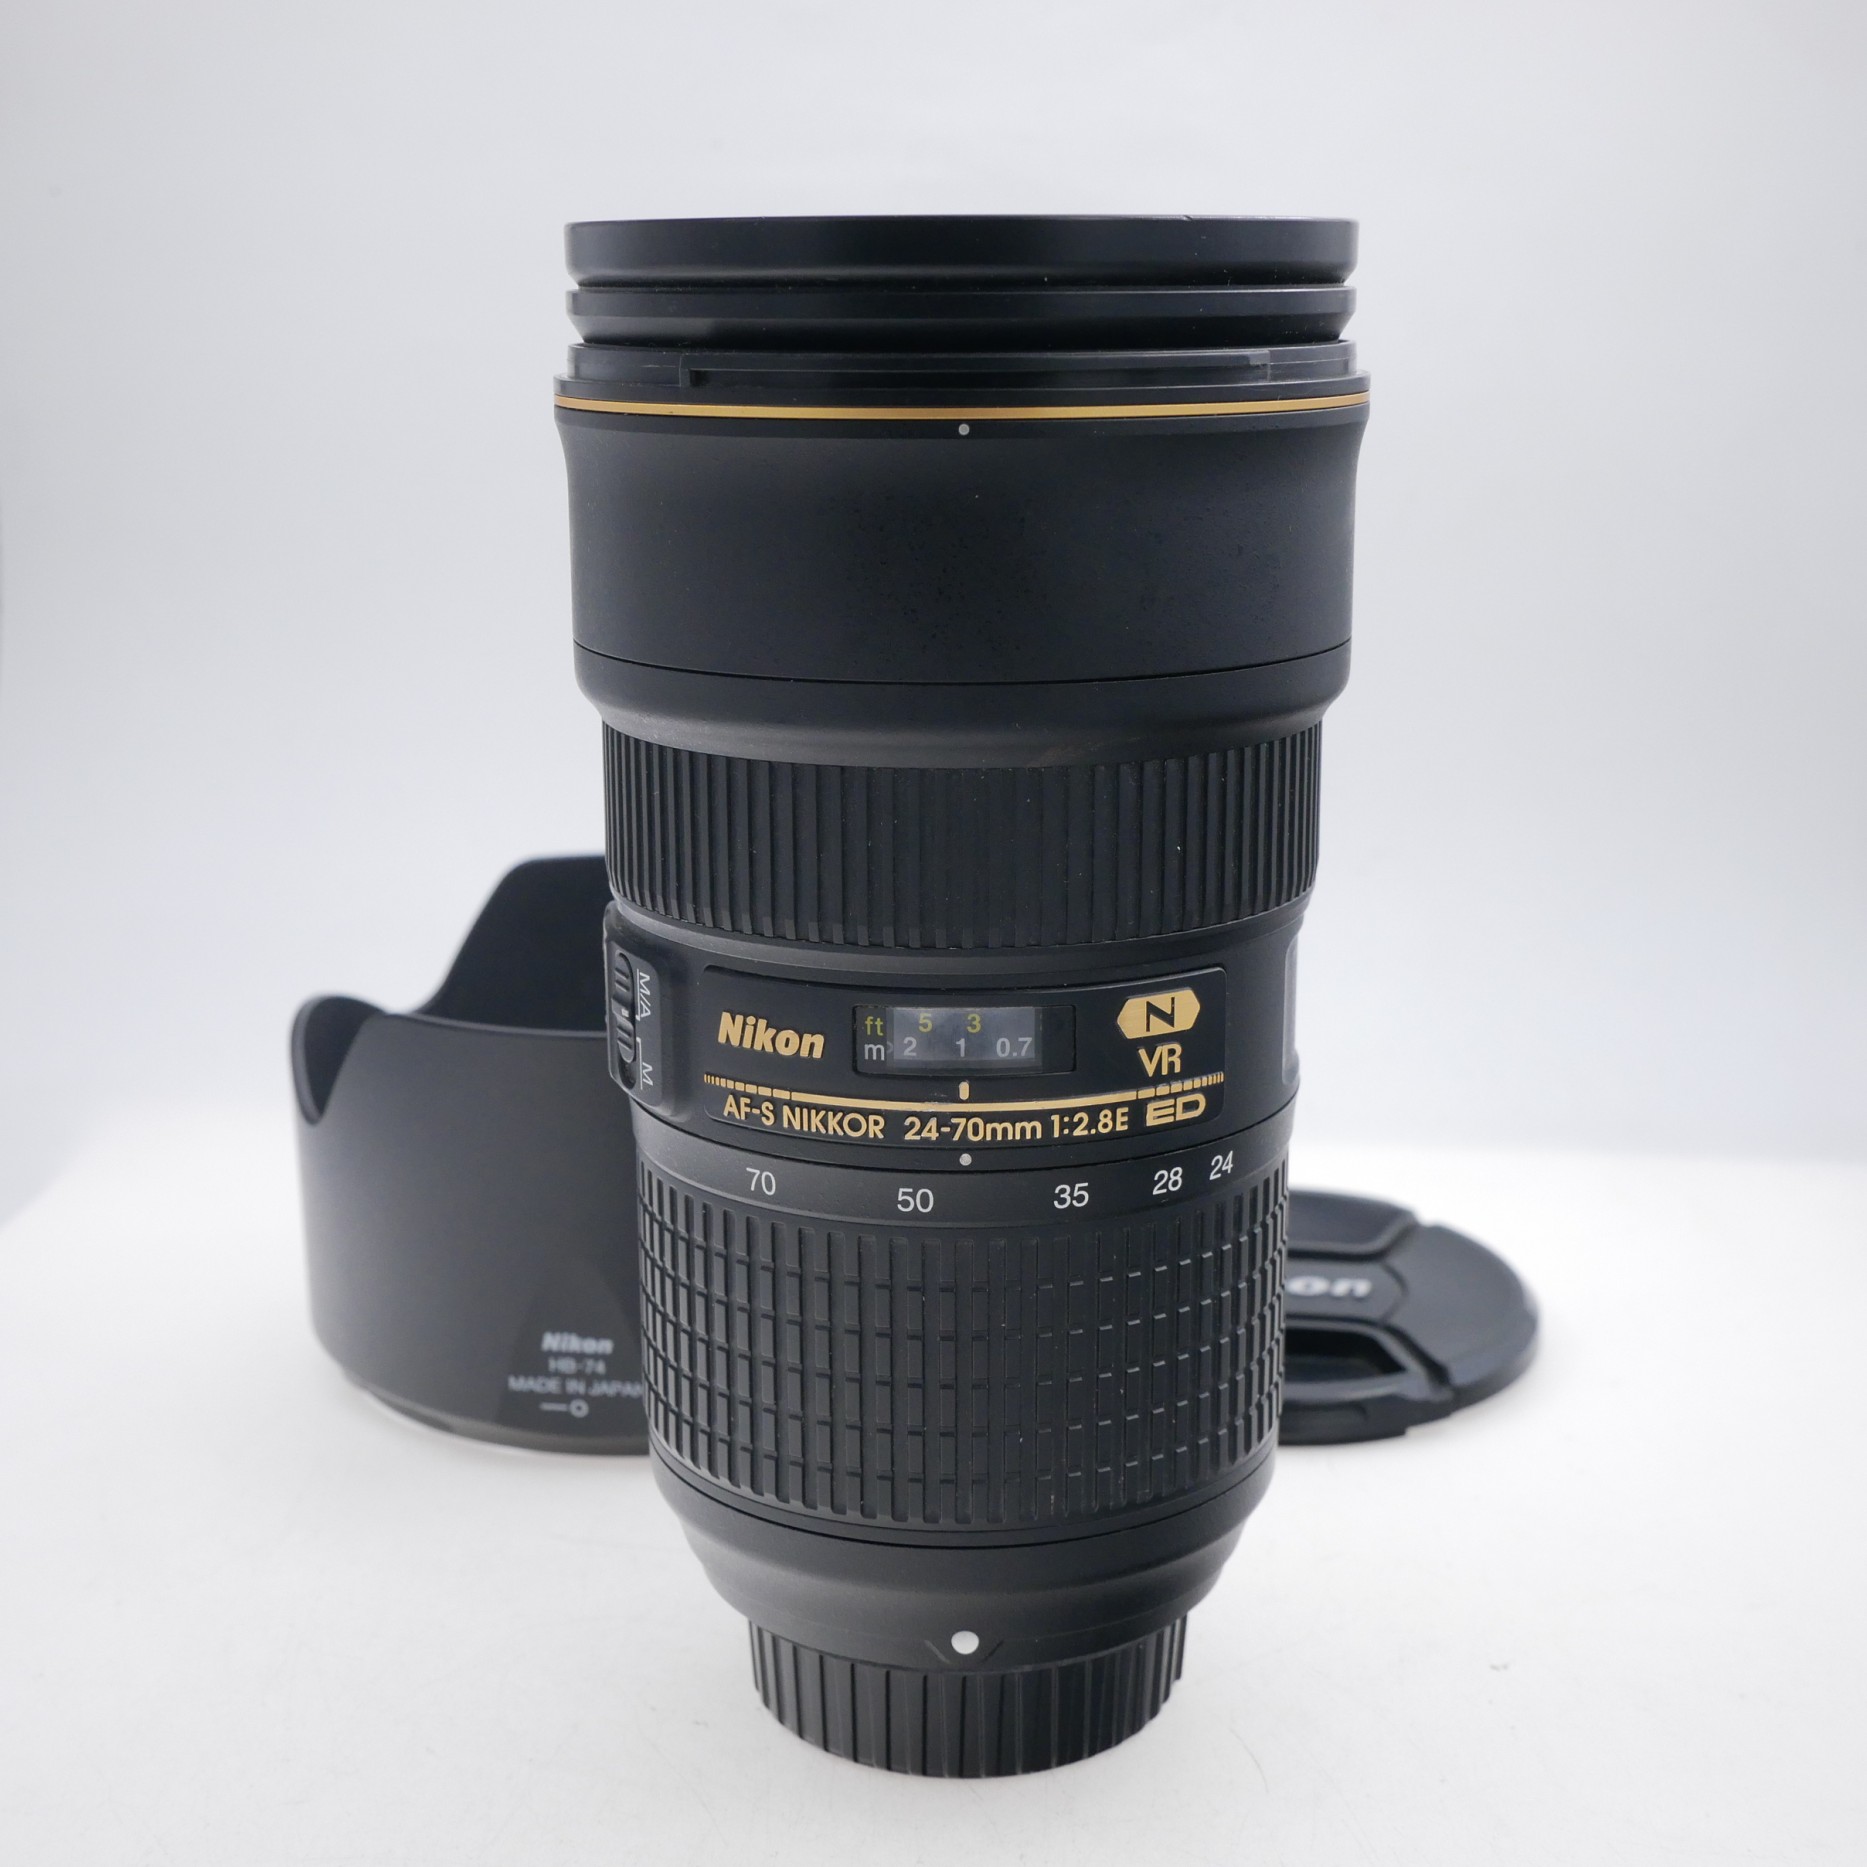 Nikon AF-S 24-70mm F2.8 E VR Nano Lens